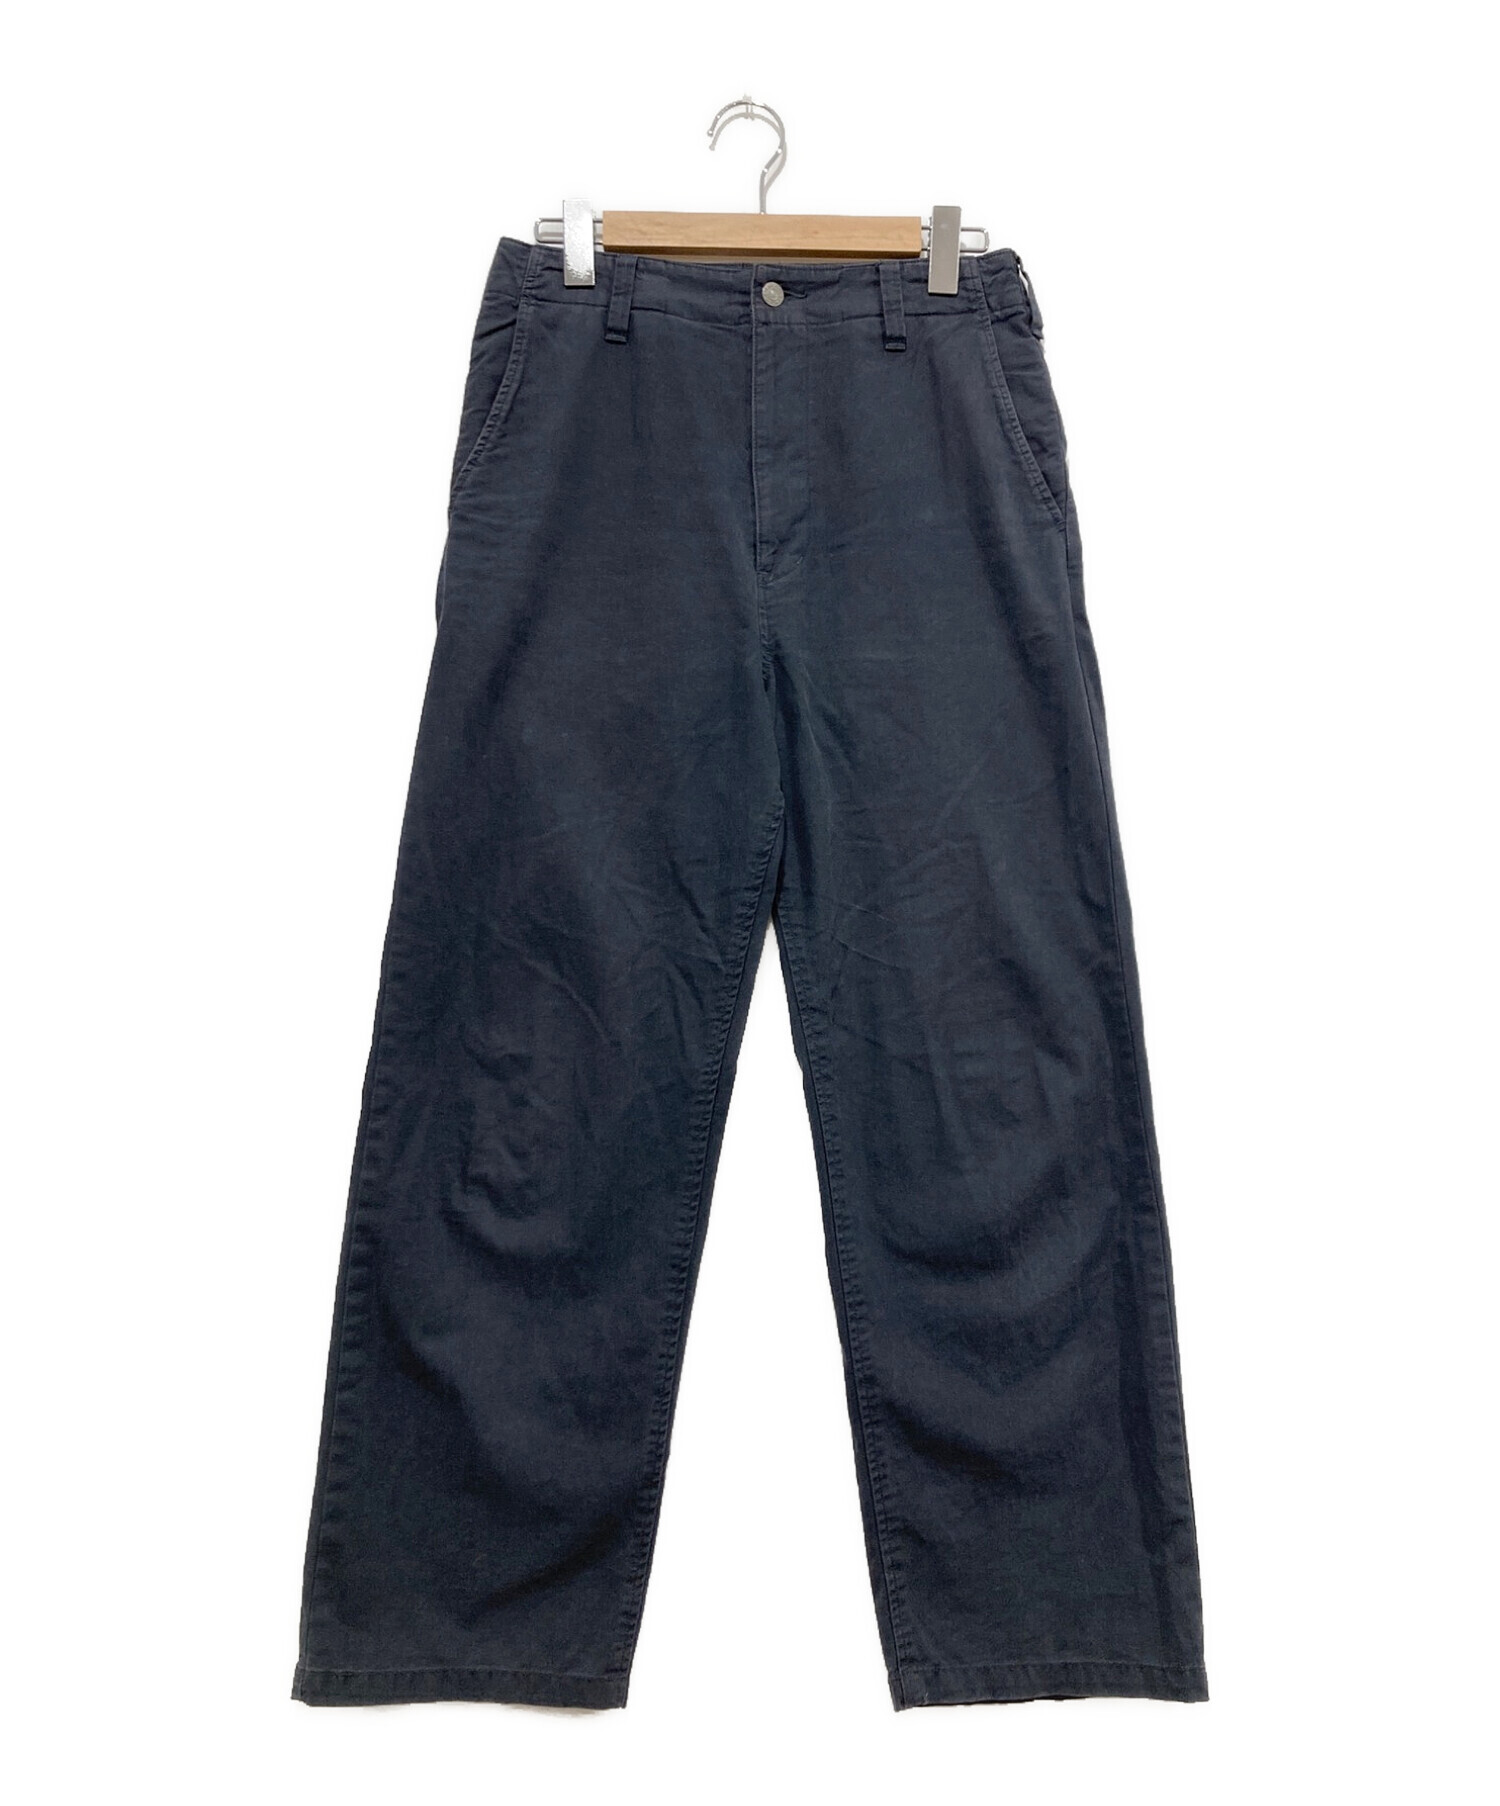 R.H.Vintage (ロンハーマン・ヴィンテージ) Organic Cotton Chino Trousers ネイビー サイズ:XS